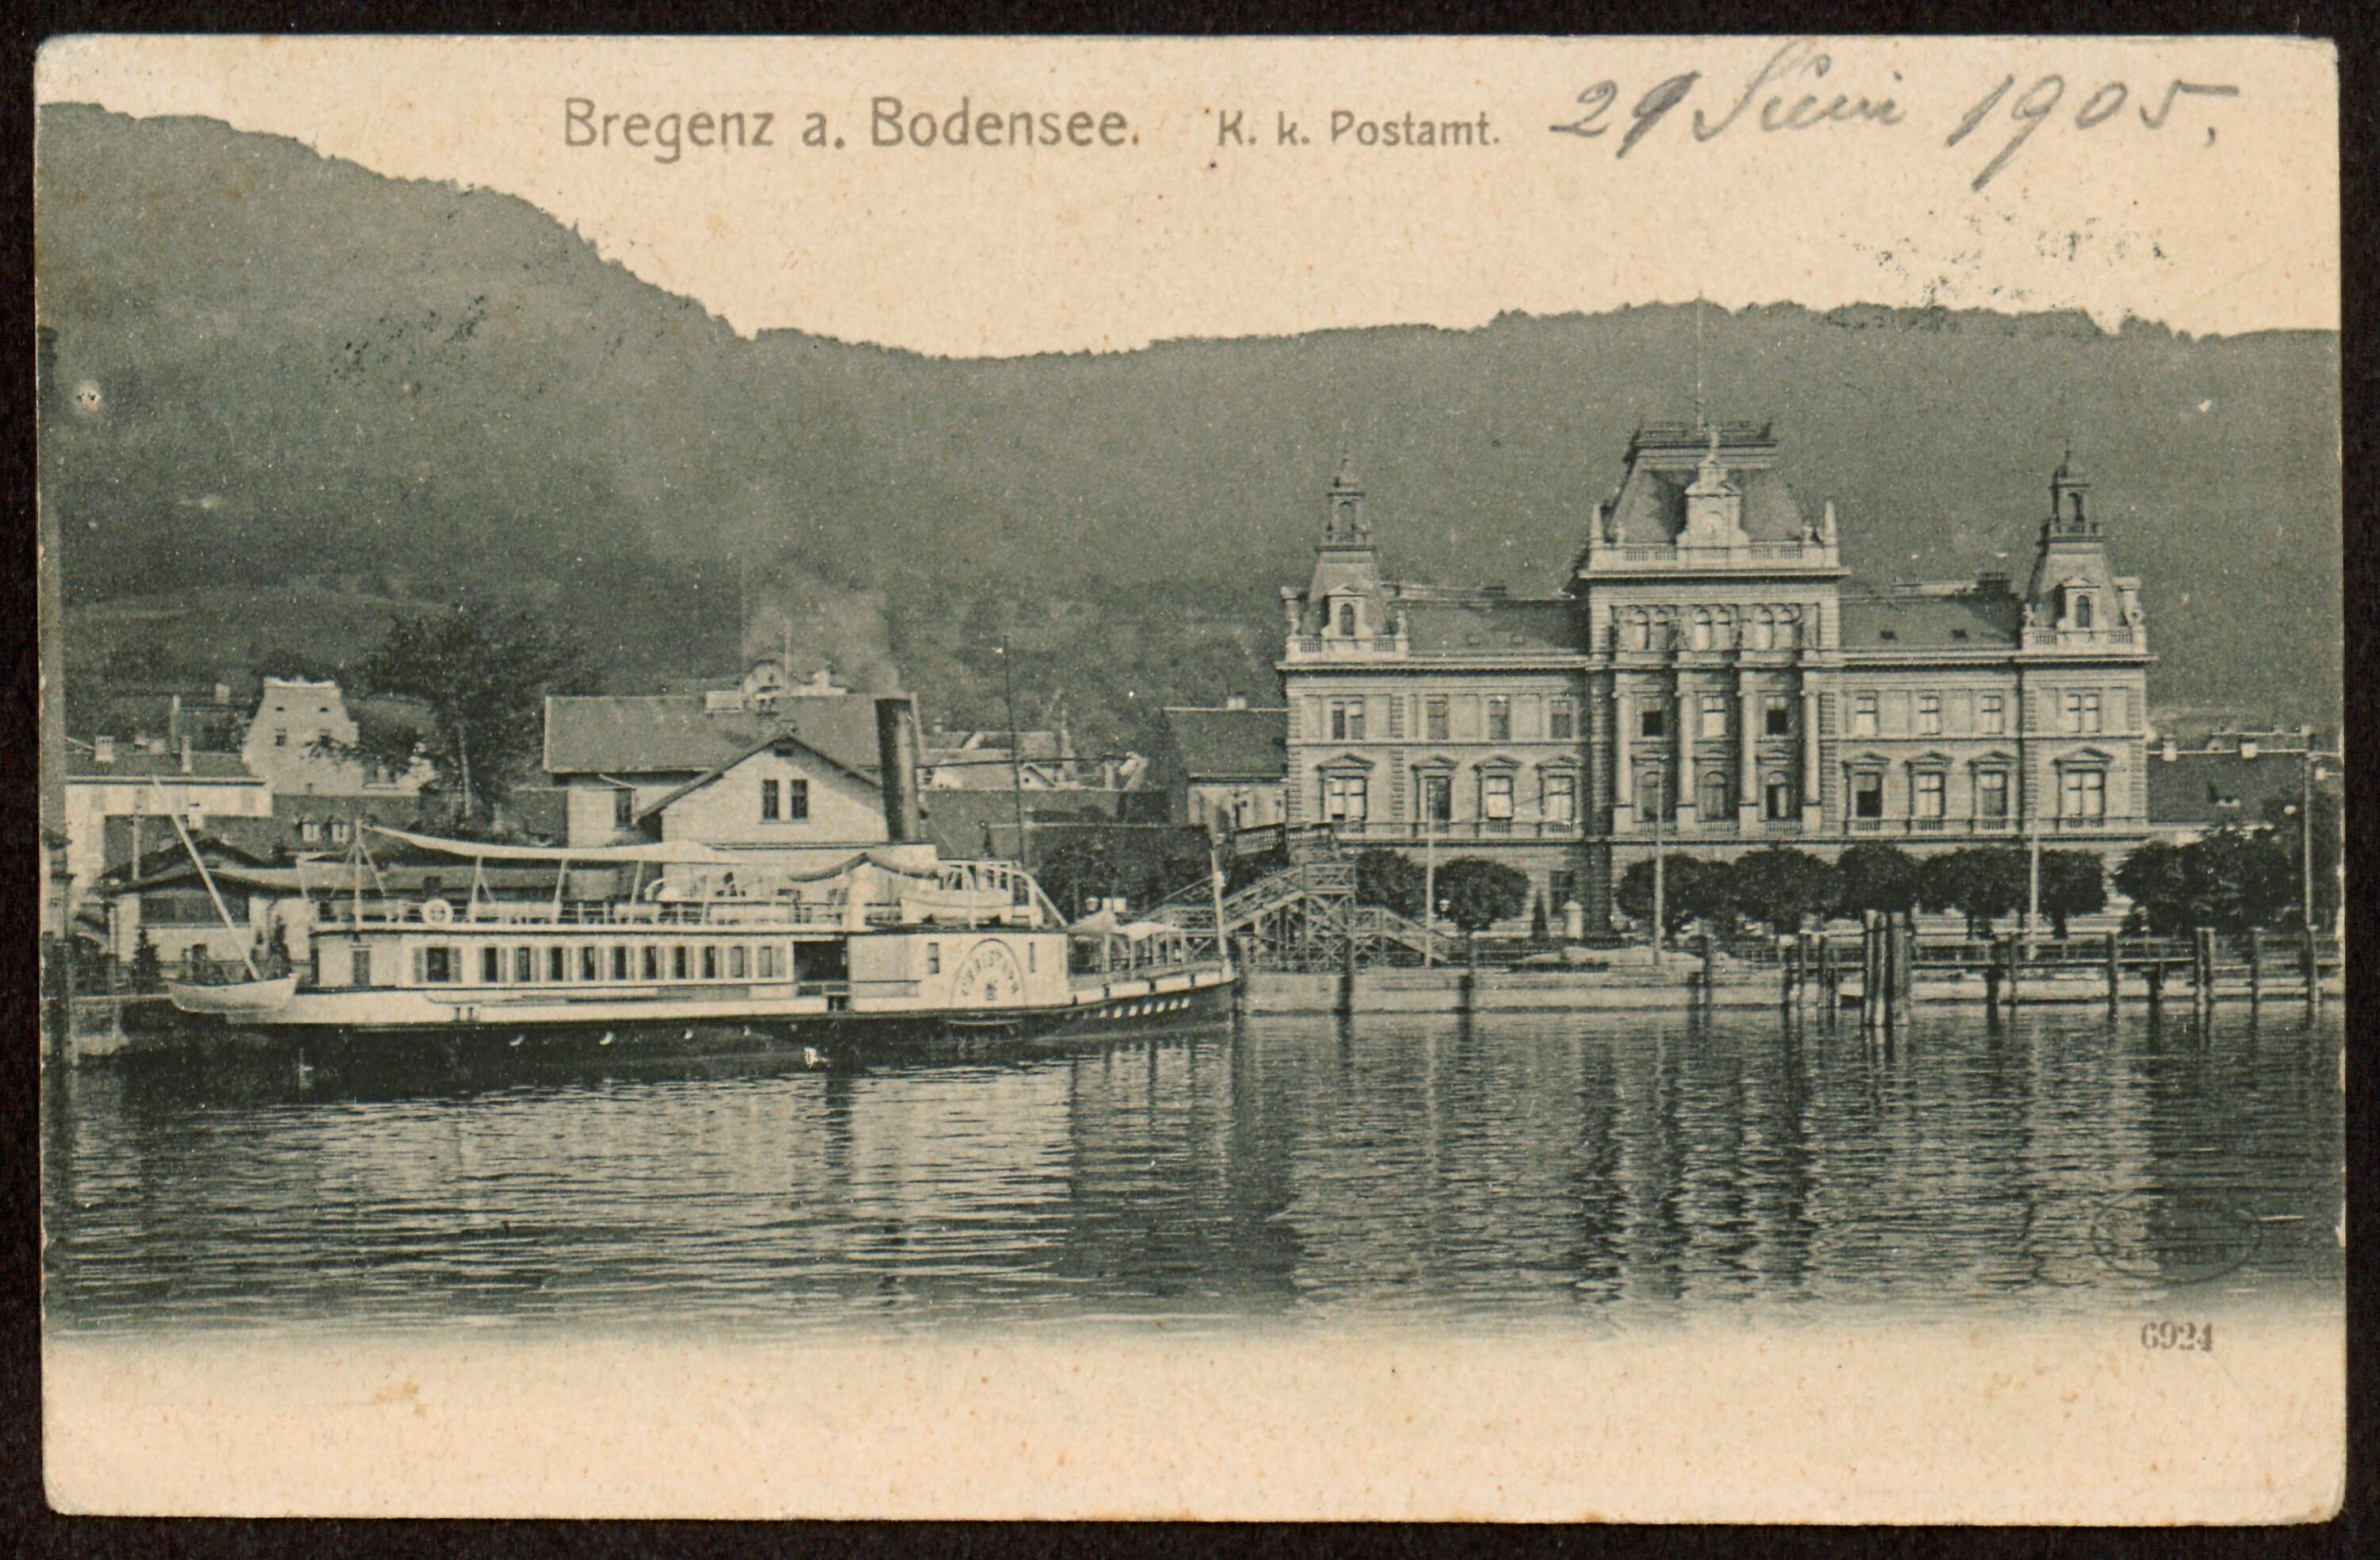 Bregenz a. Bodensee></div>


    <hr>
    <div class=